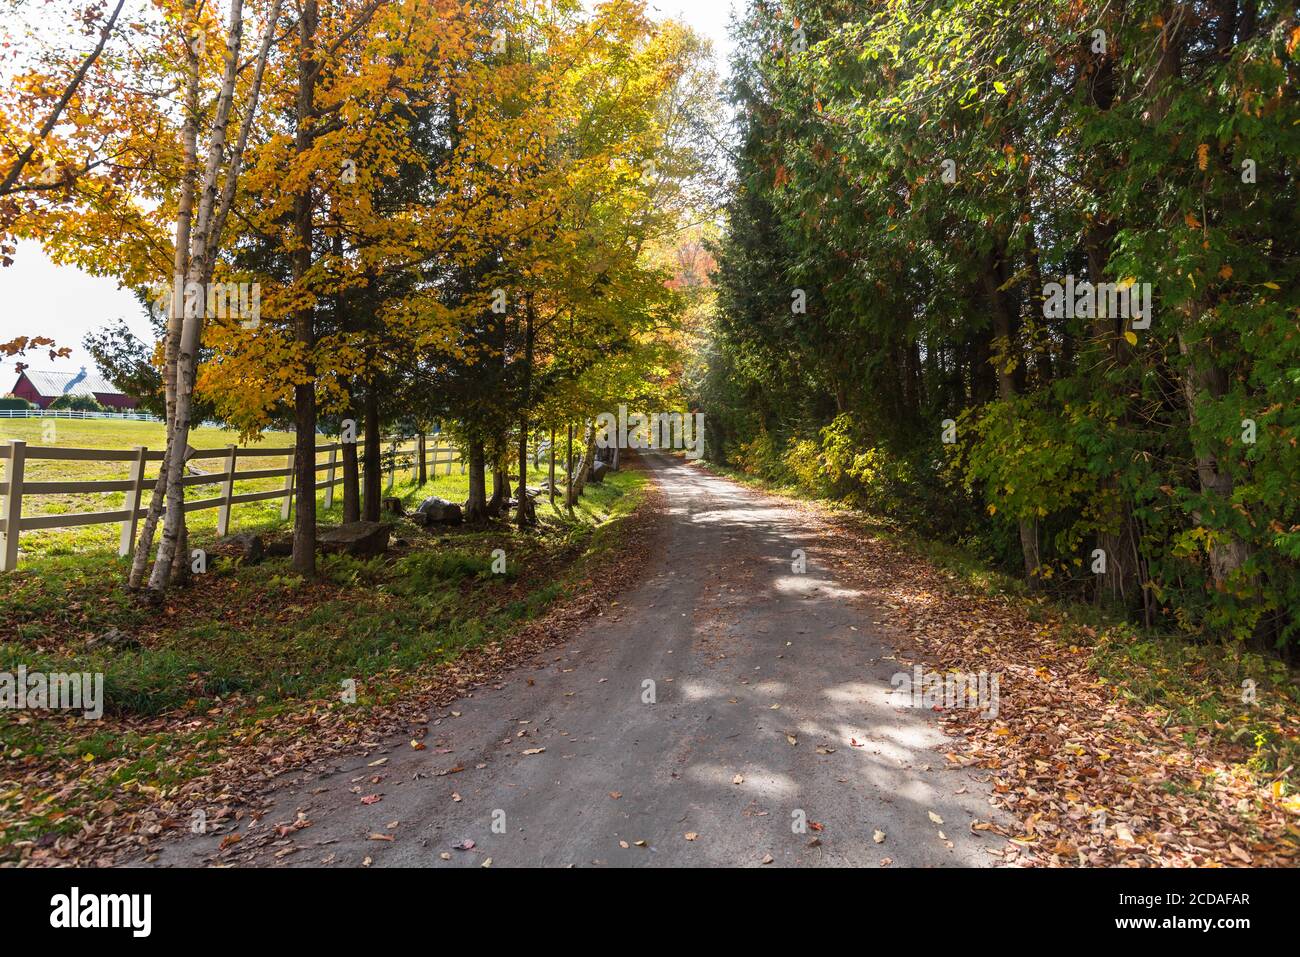 Route arrière déserte bordée d'une clôture à travers des arbres à feuilles caduques un jour d'automne ensoleillé Banque D'Images